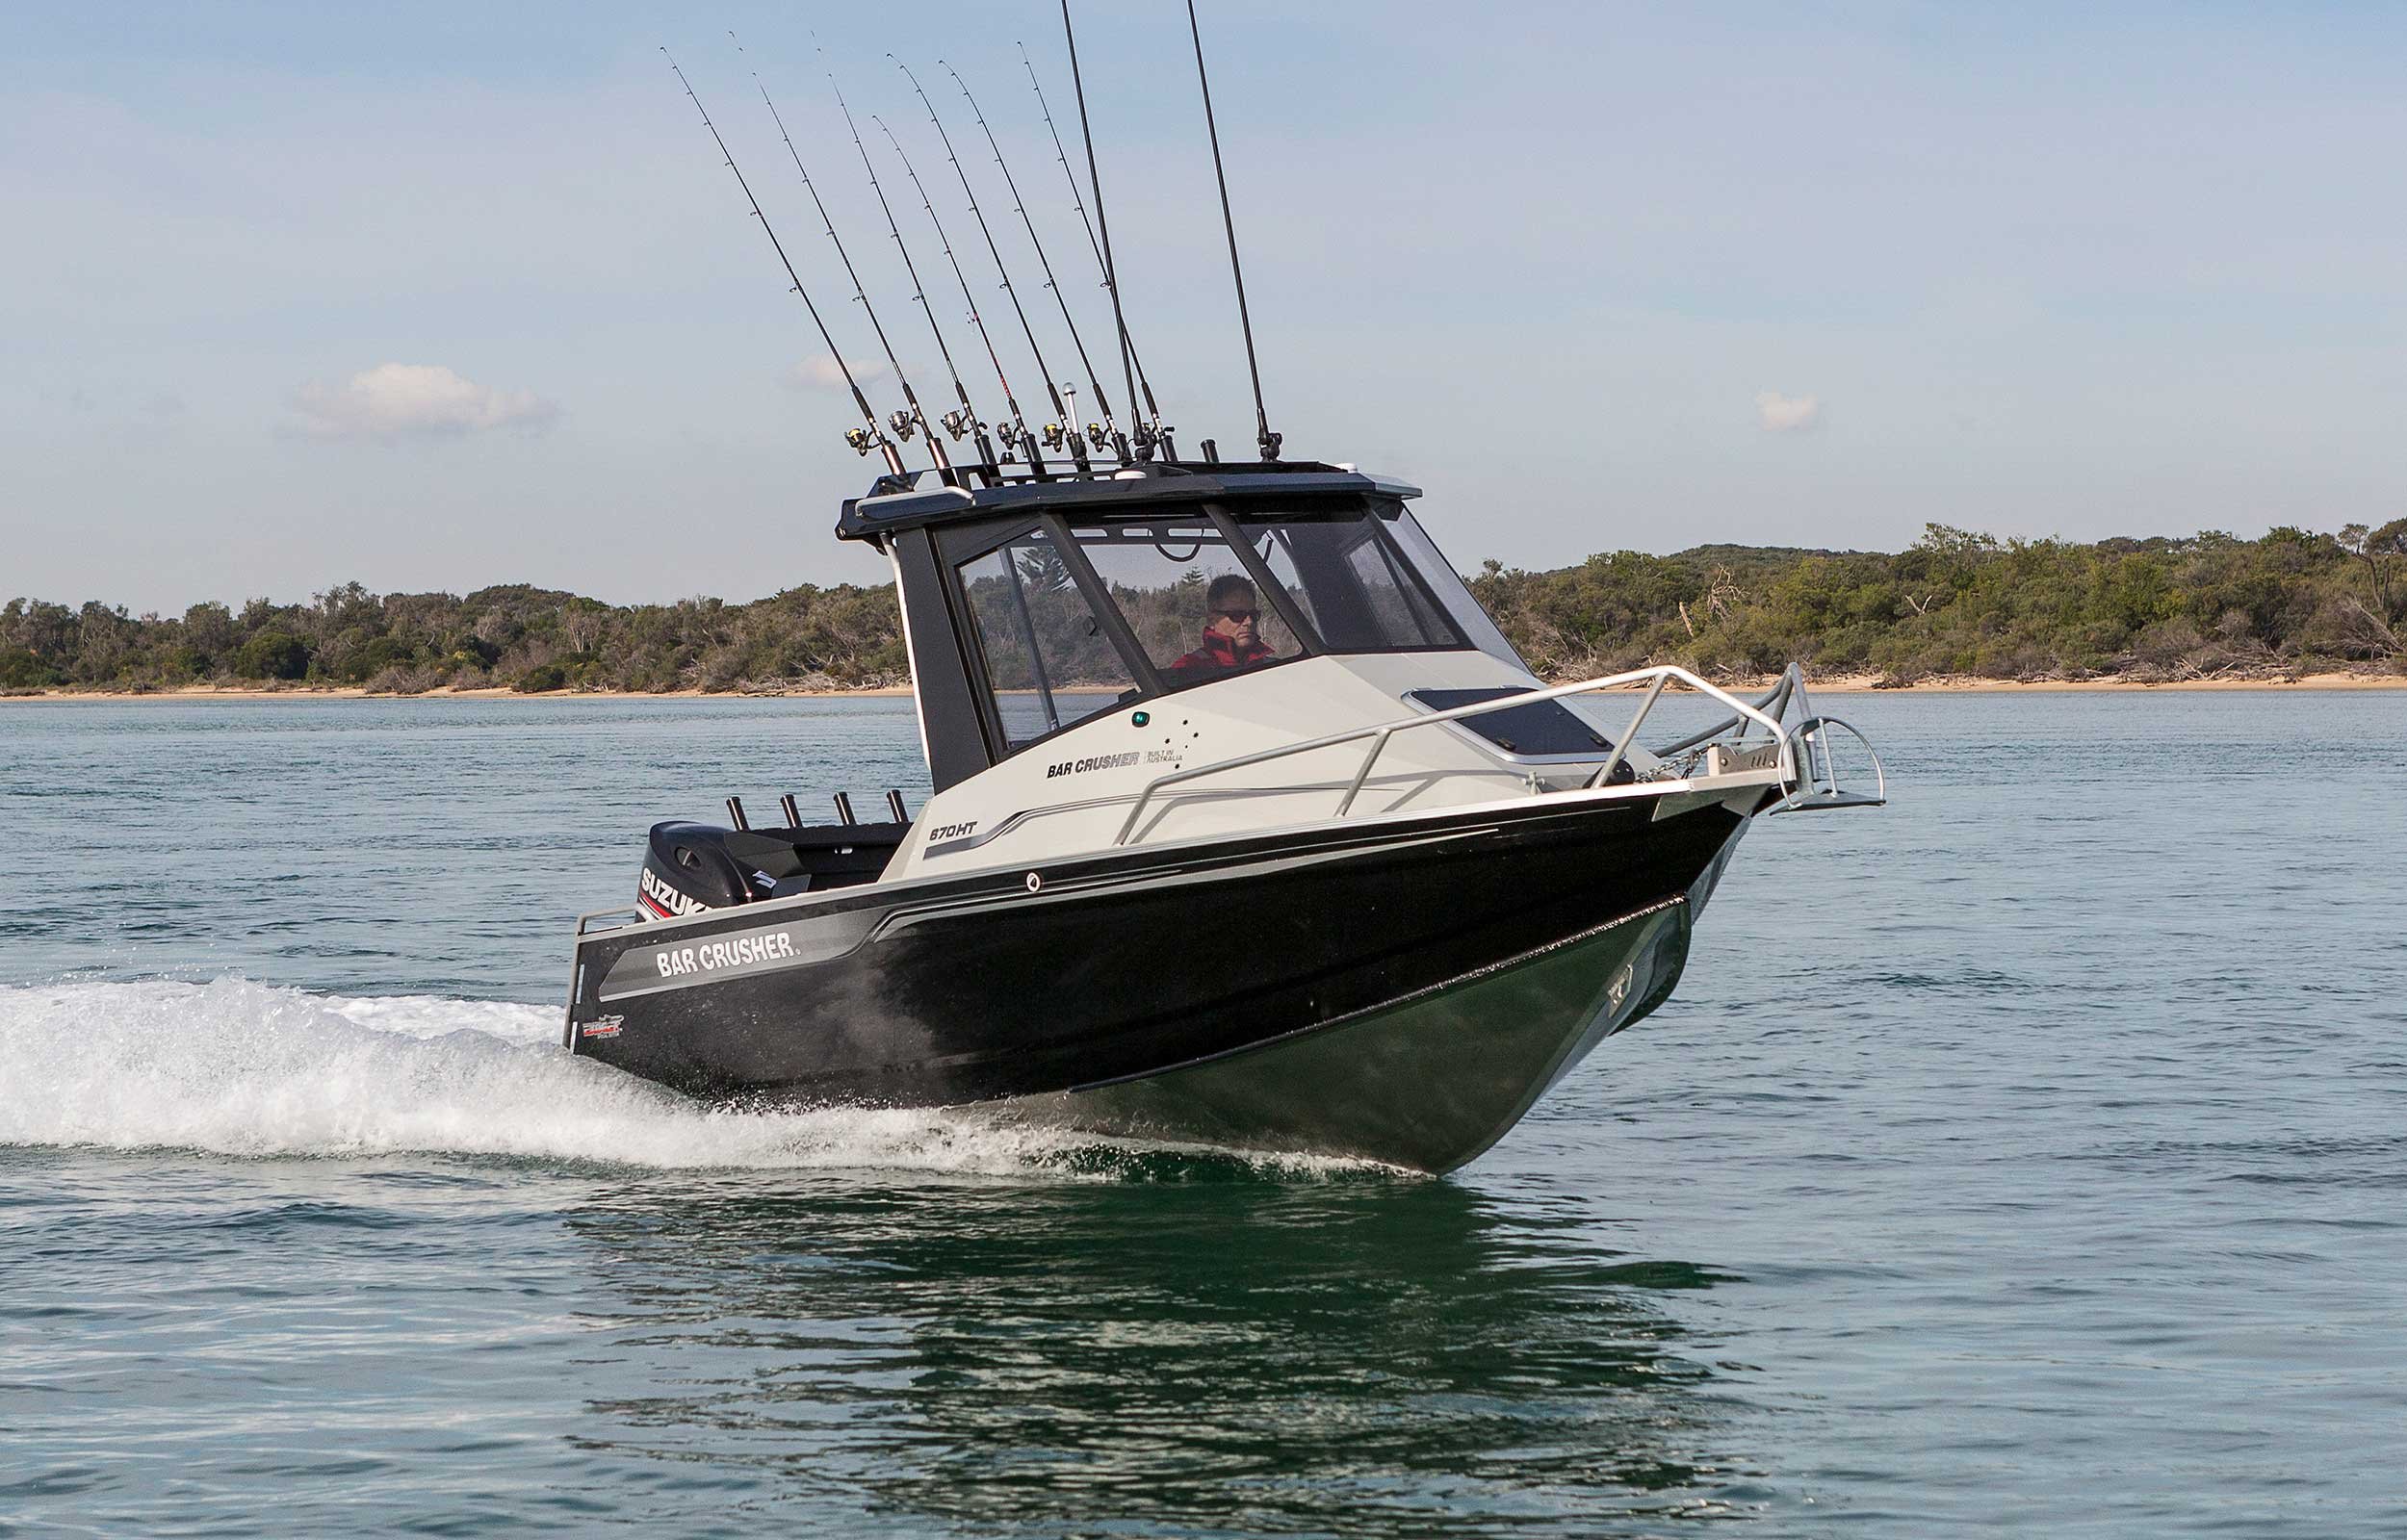 models-bar-crusher-670ht-exocet-plate-aluminium-fishing-boat-web-3